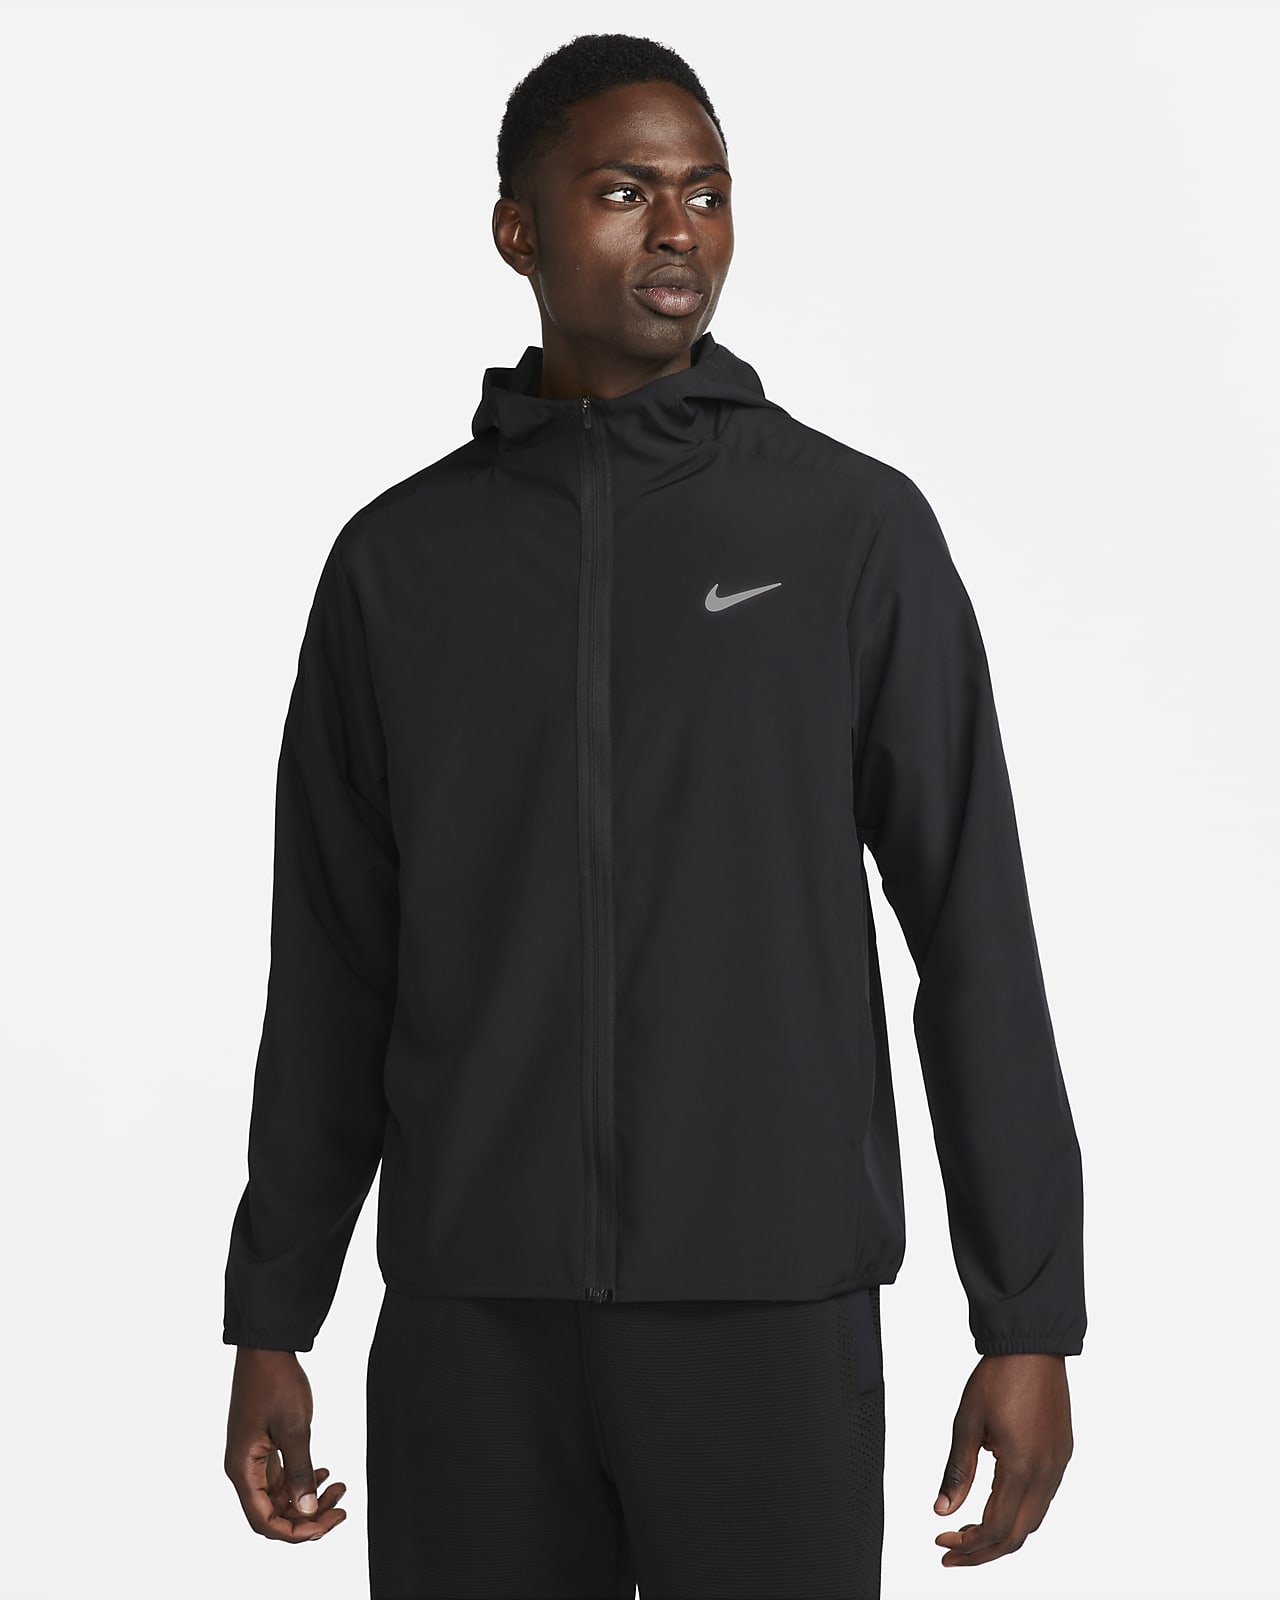 Nike Yoga Dri-FIT Men's Full-Zip Jersey Hoodie. Nike LU